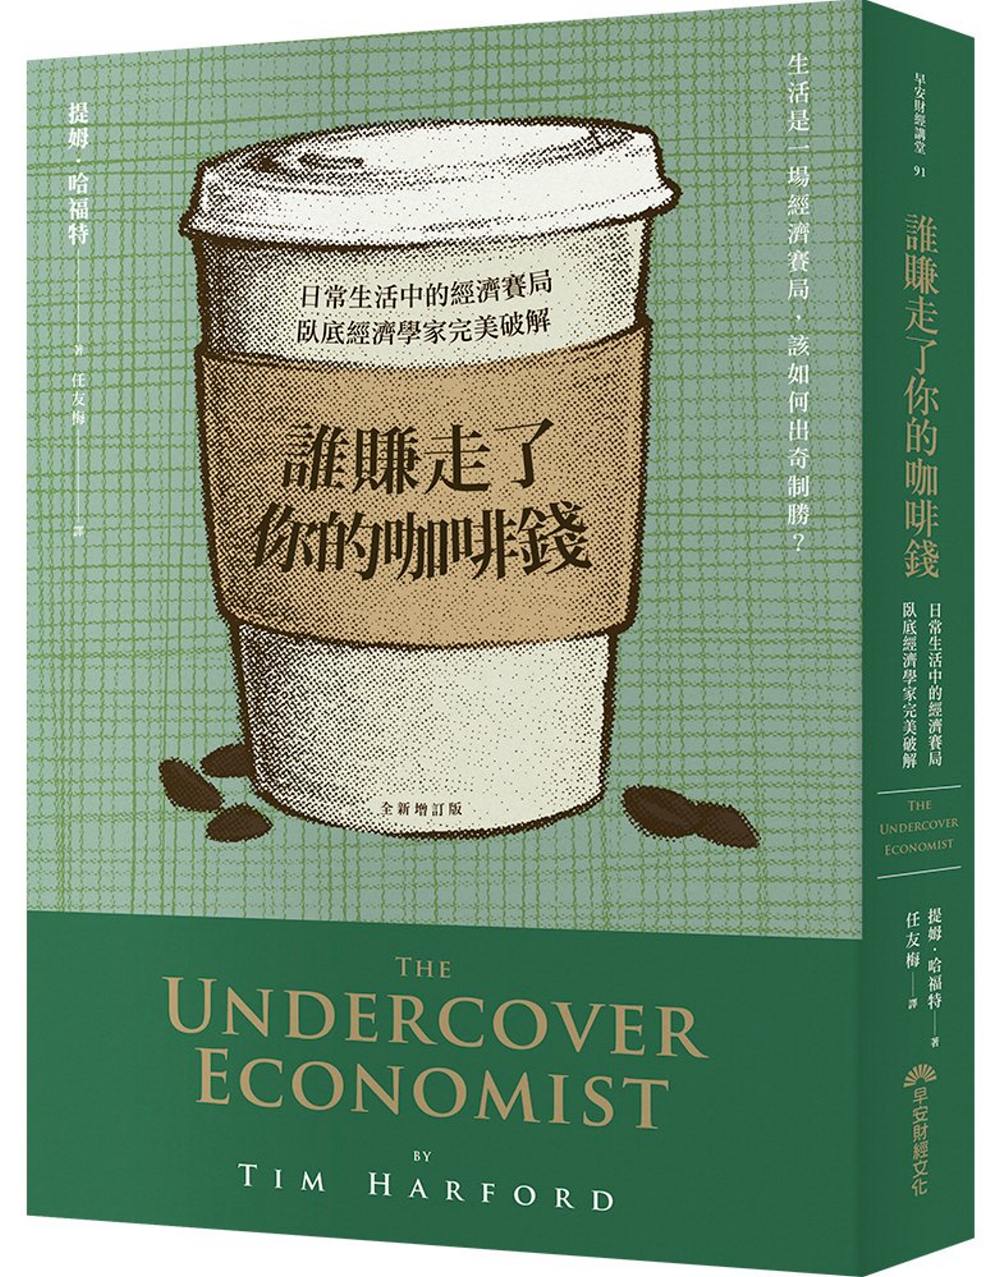 誰賺走了你的咖啡錢：日常生活中的經濟賽局，臥底經濟學家完美破解(全新增訂版)